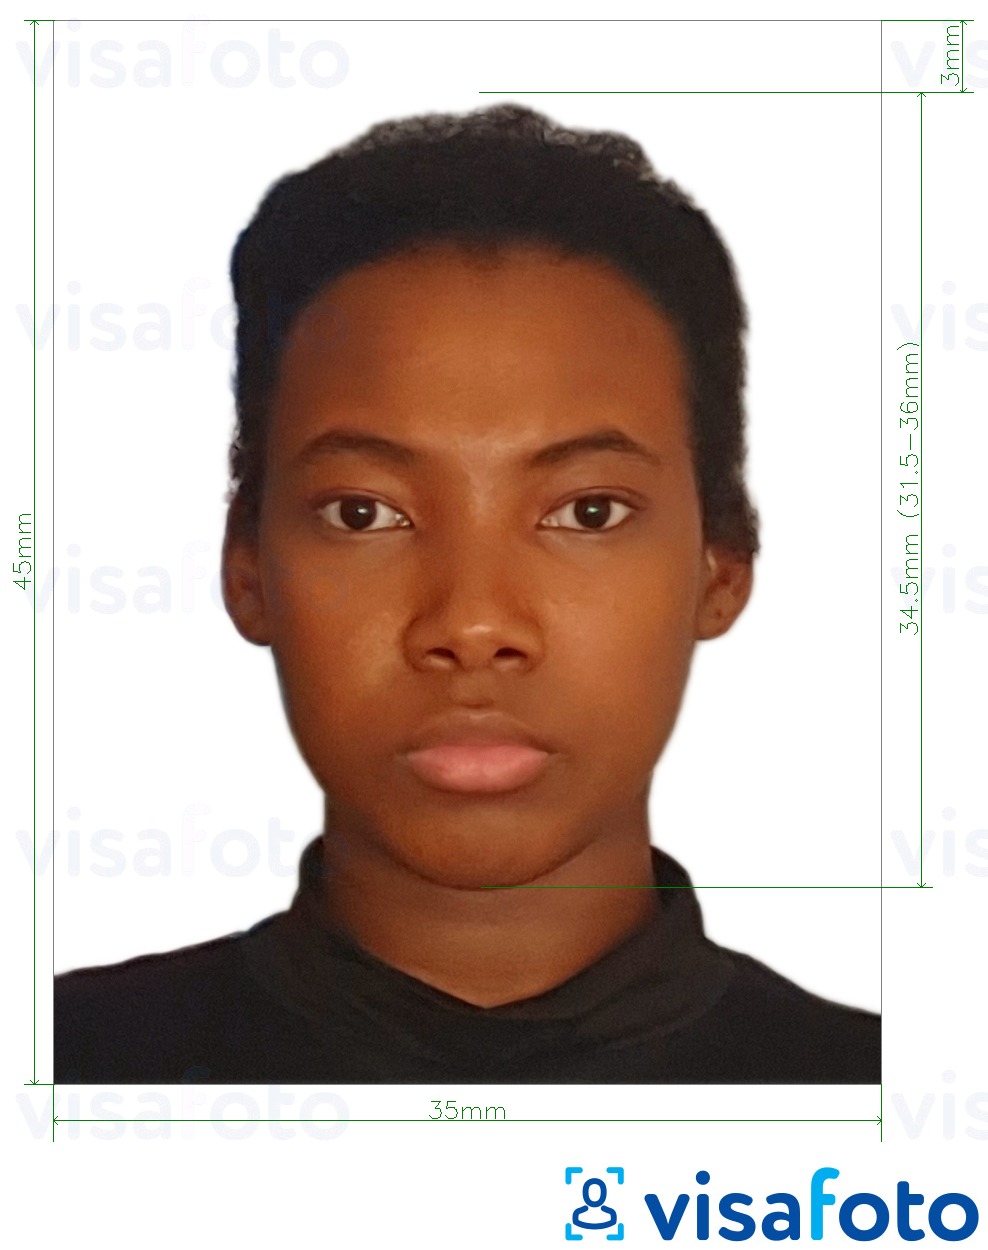 نمونه ی یک عکس برای موزامبیک ویزا 35x45 میلیمتر (3.5x4.5 سانتی متر) با مشخصات دقیق